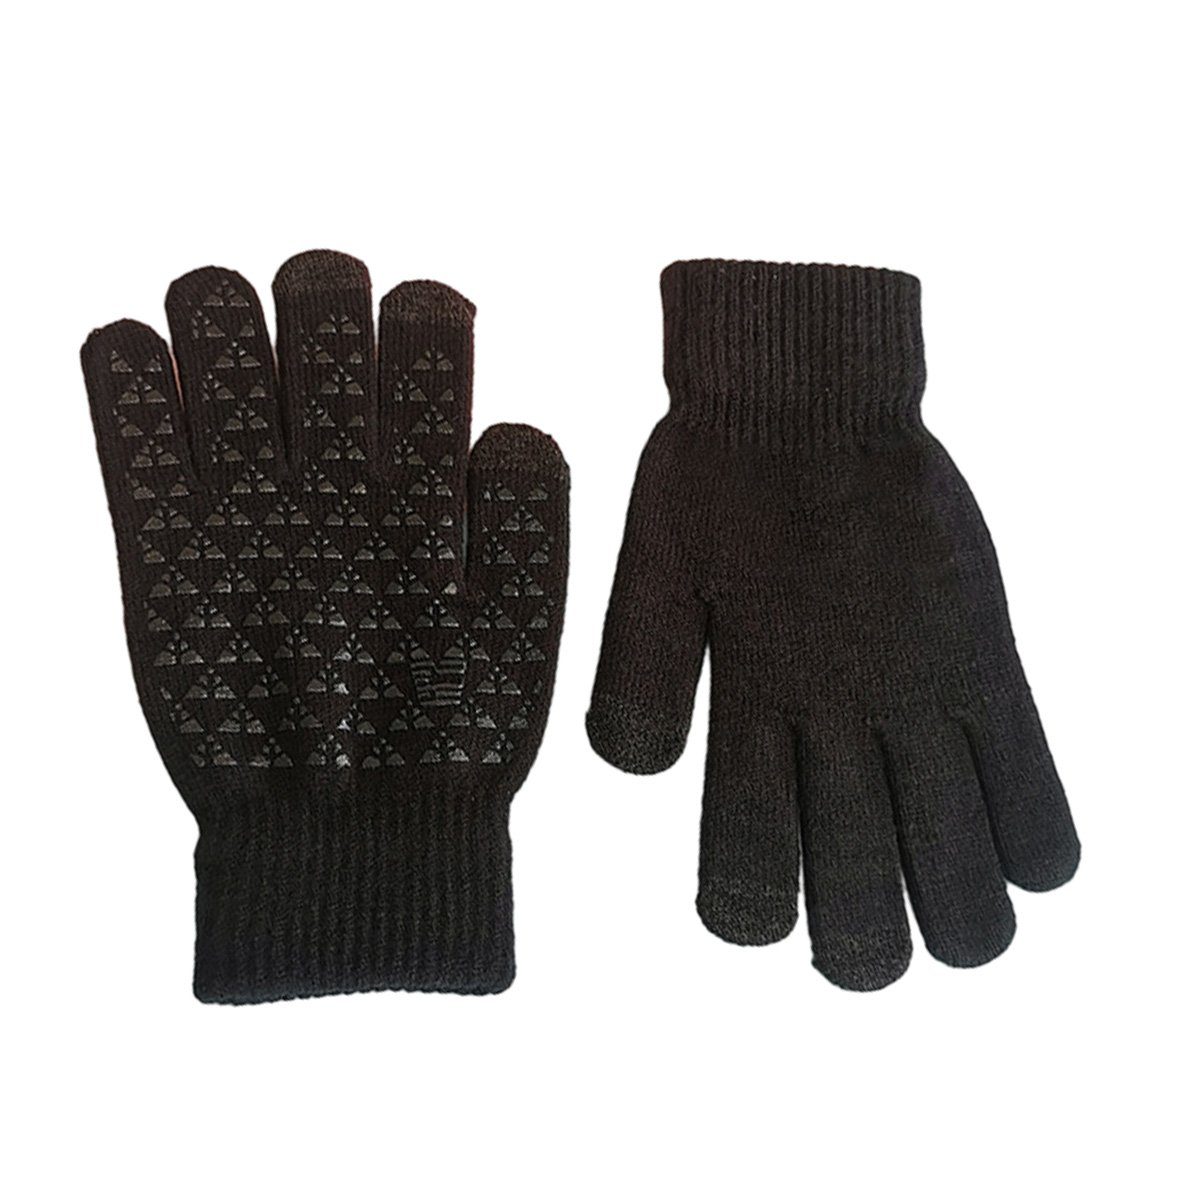 JedBesetzt Strickhandschuhe Winterhandschuhe Touchscreen Handschuhe Strick Fingerhandschuhe Schwarz